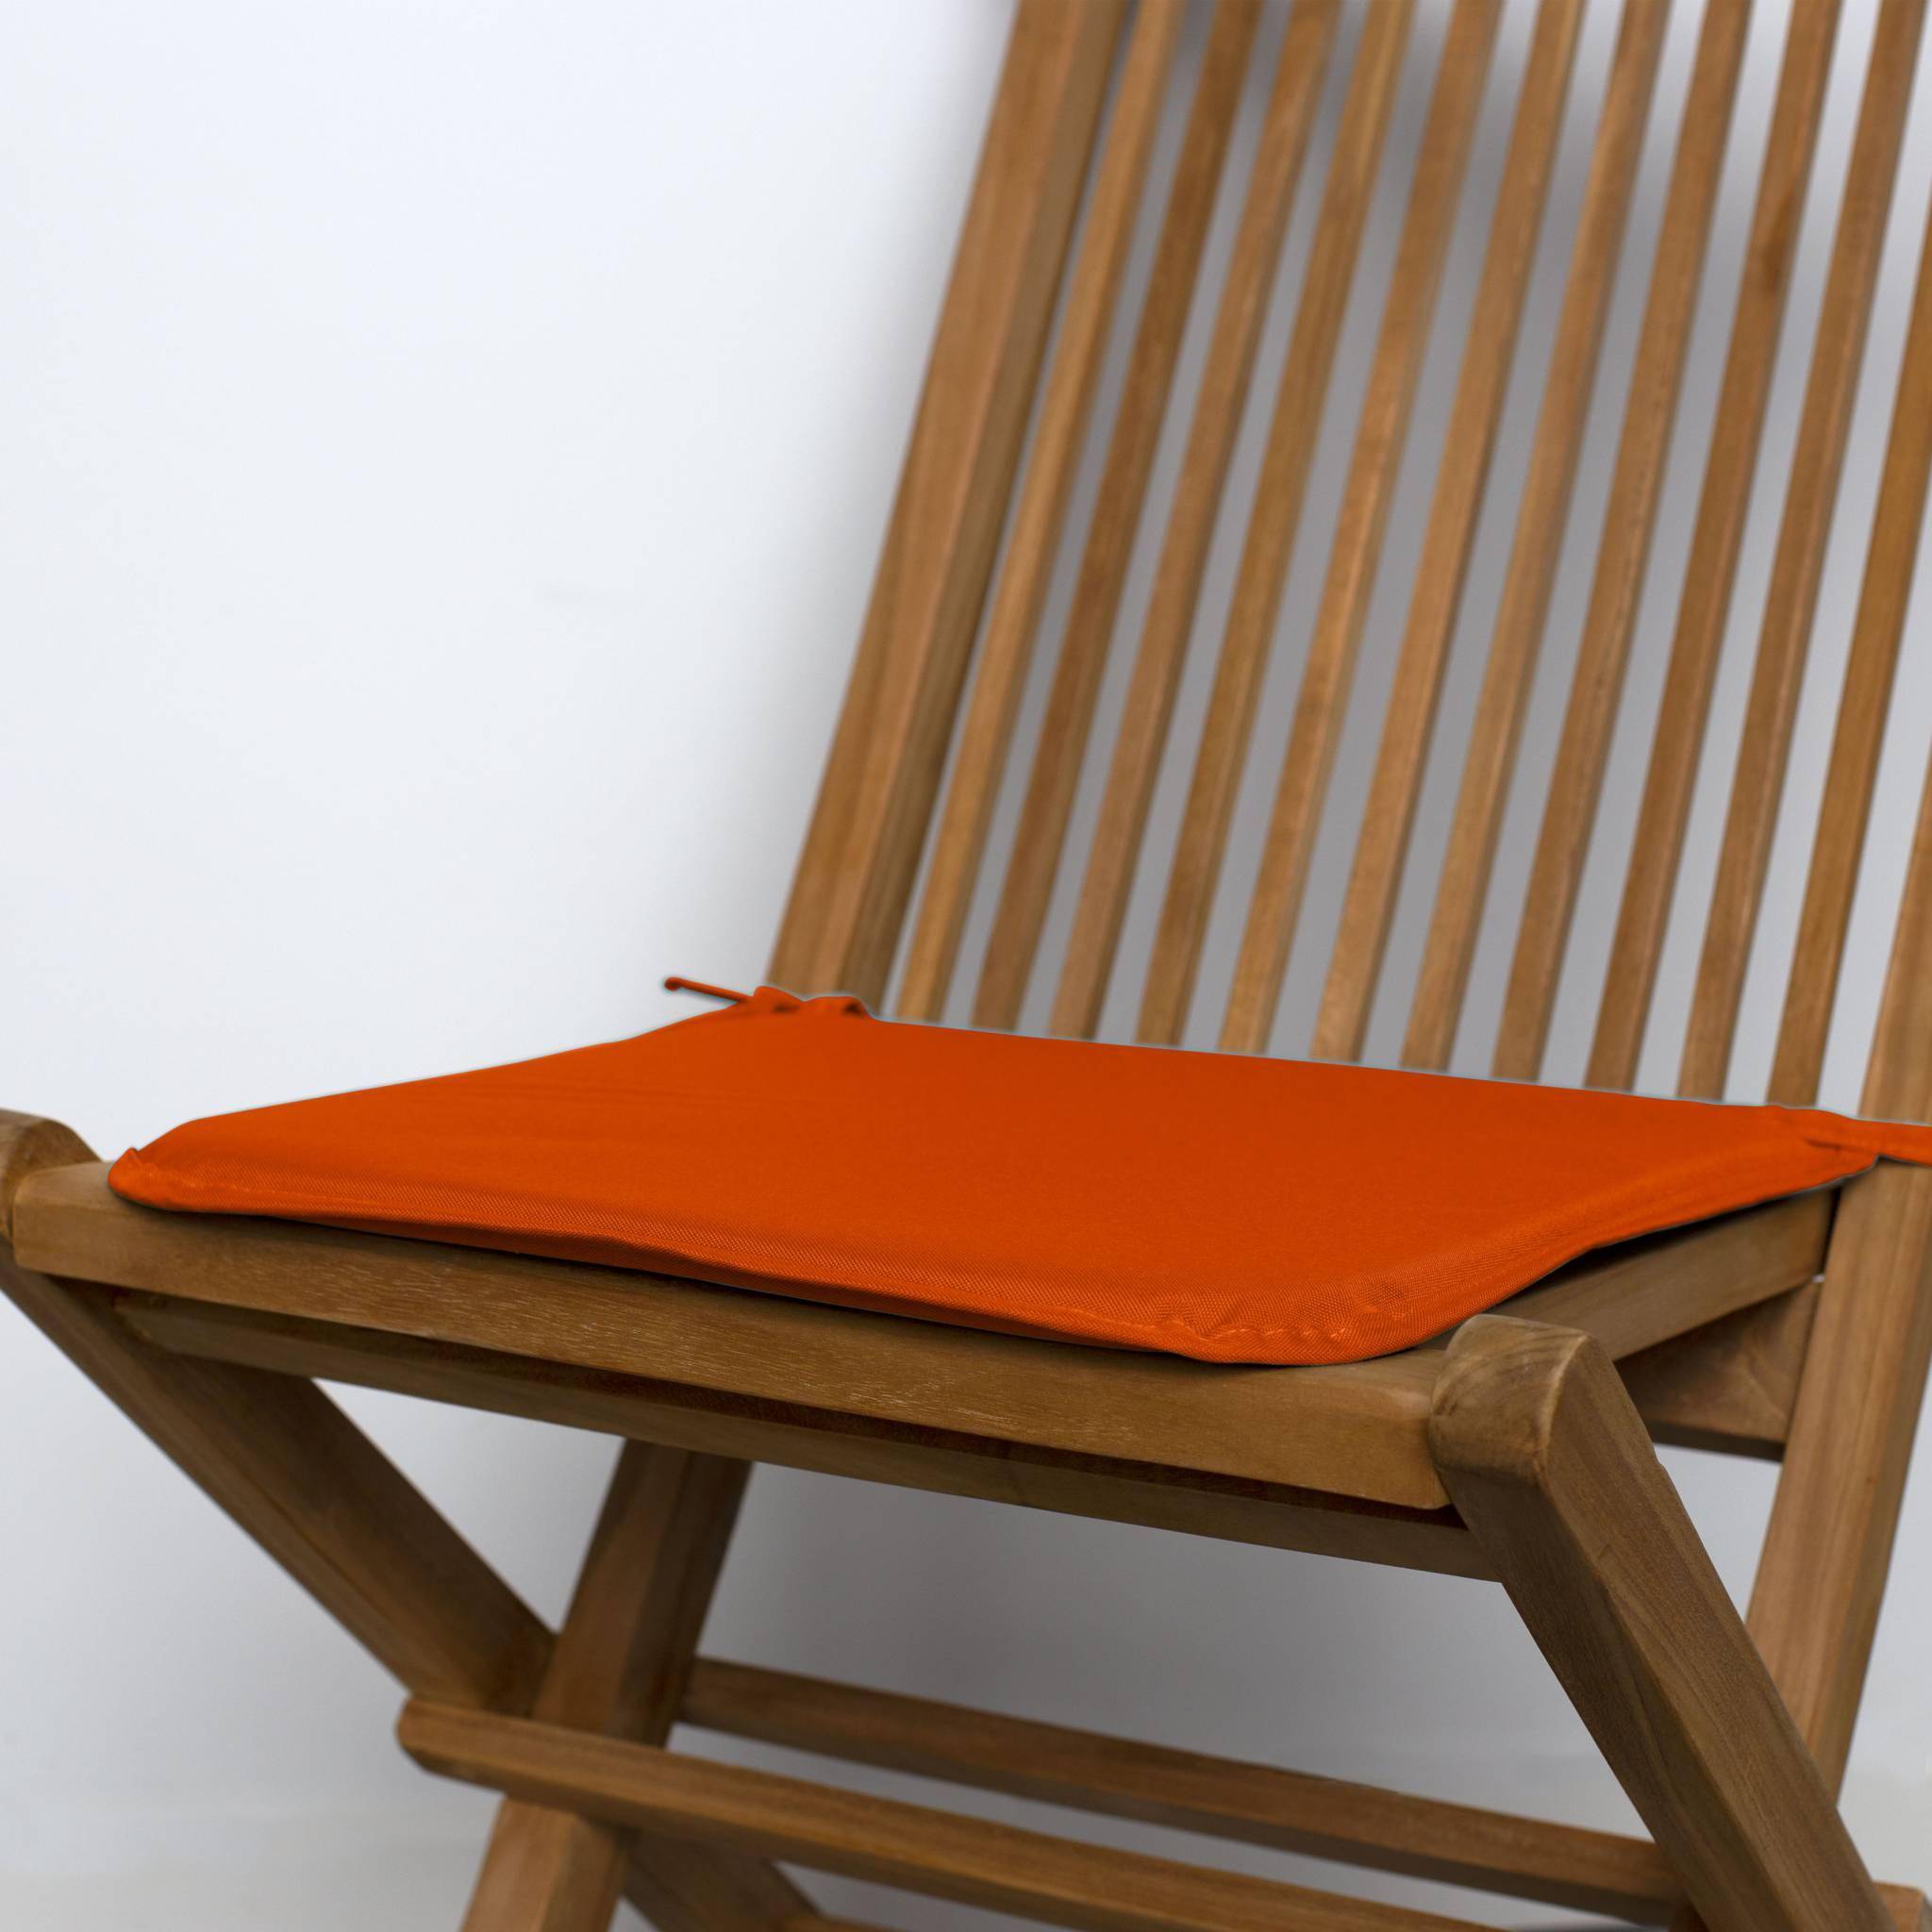 Lot de 4 galettes de chaise – 38 x 38 cm – orange, assise avec fixation à nœuds, bords gansés Photo2